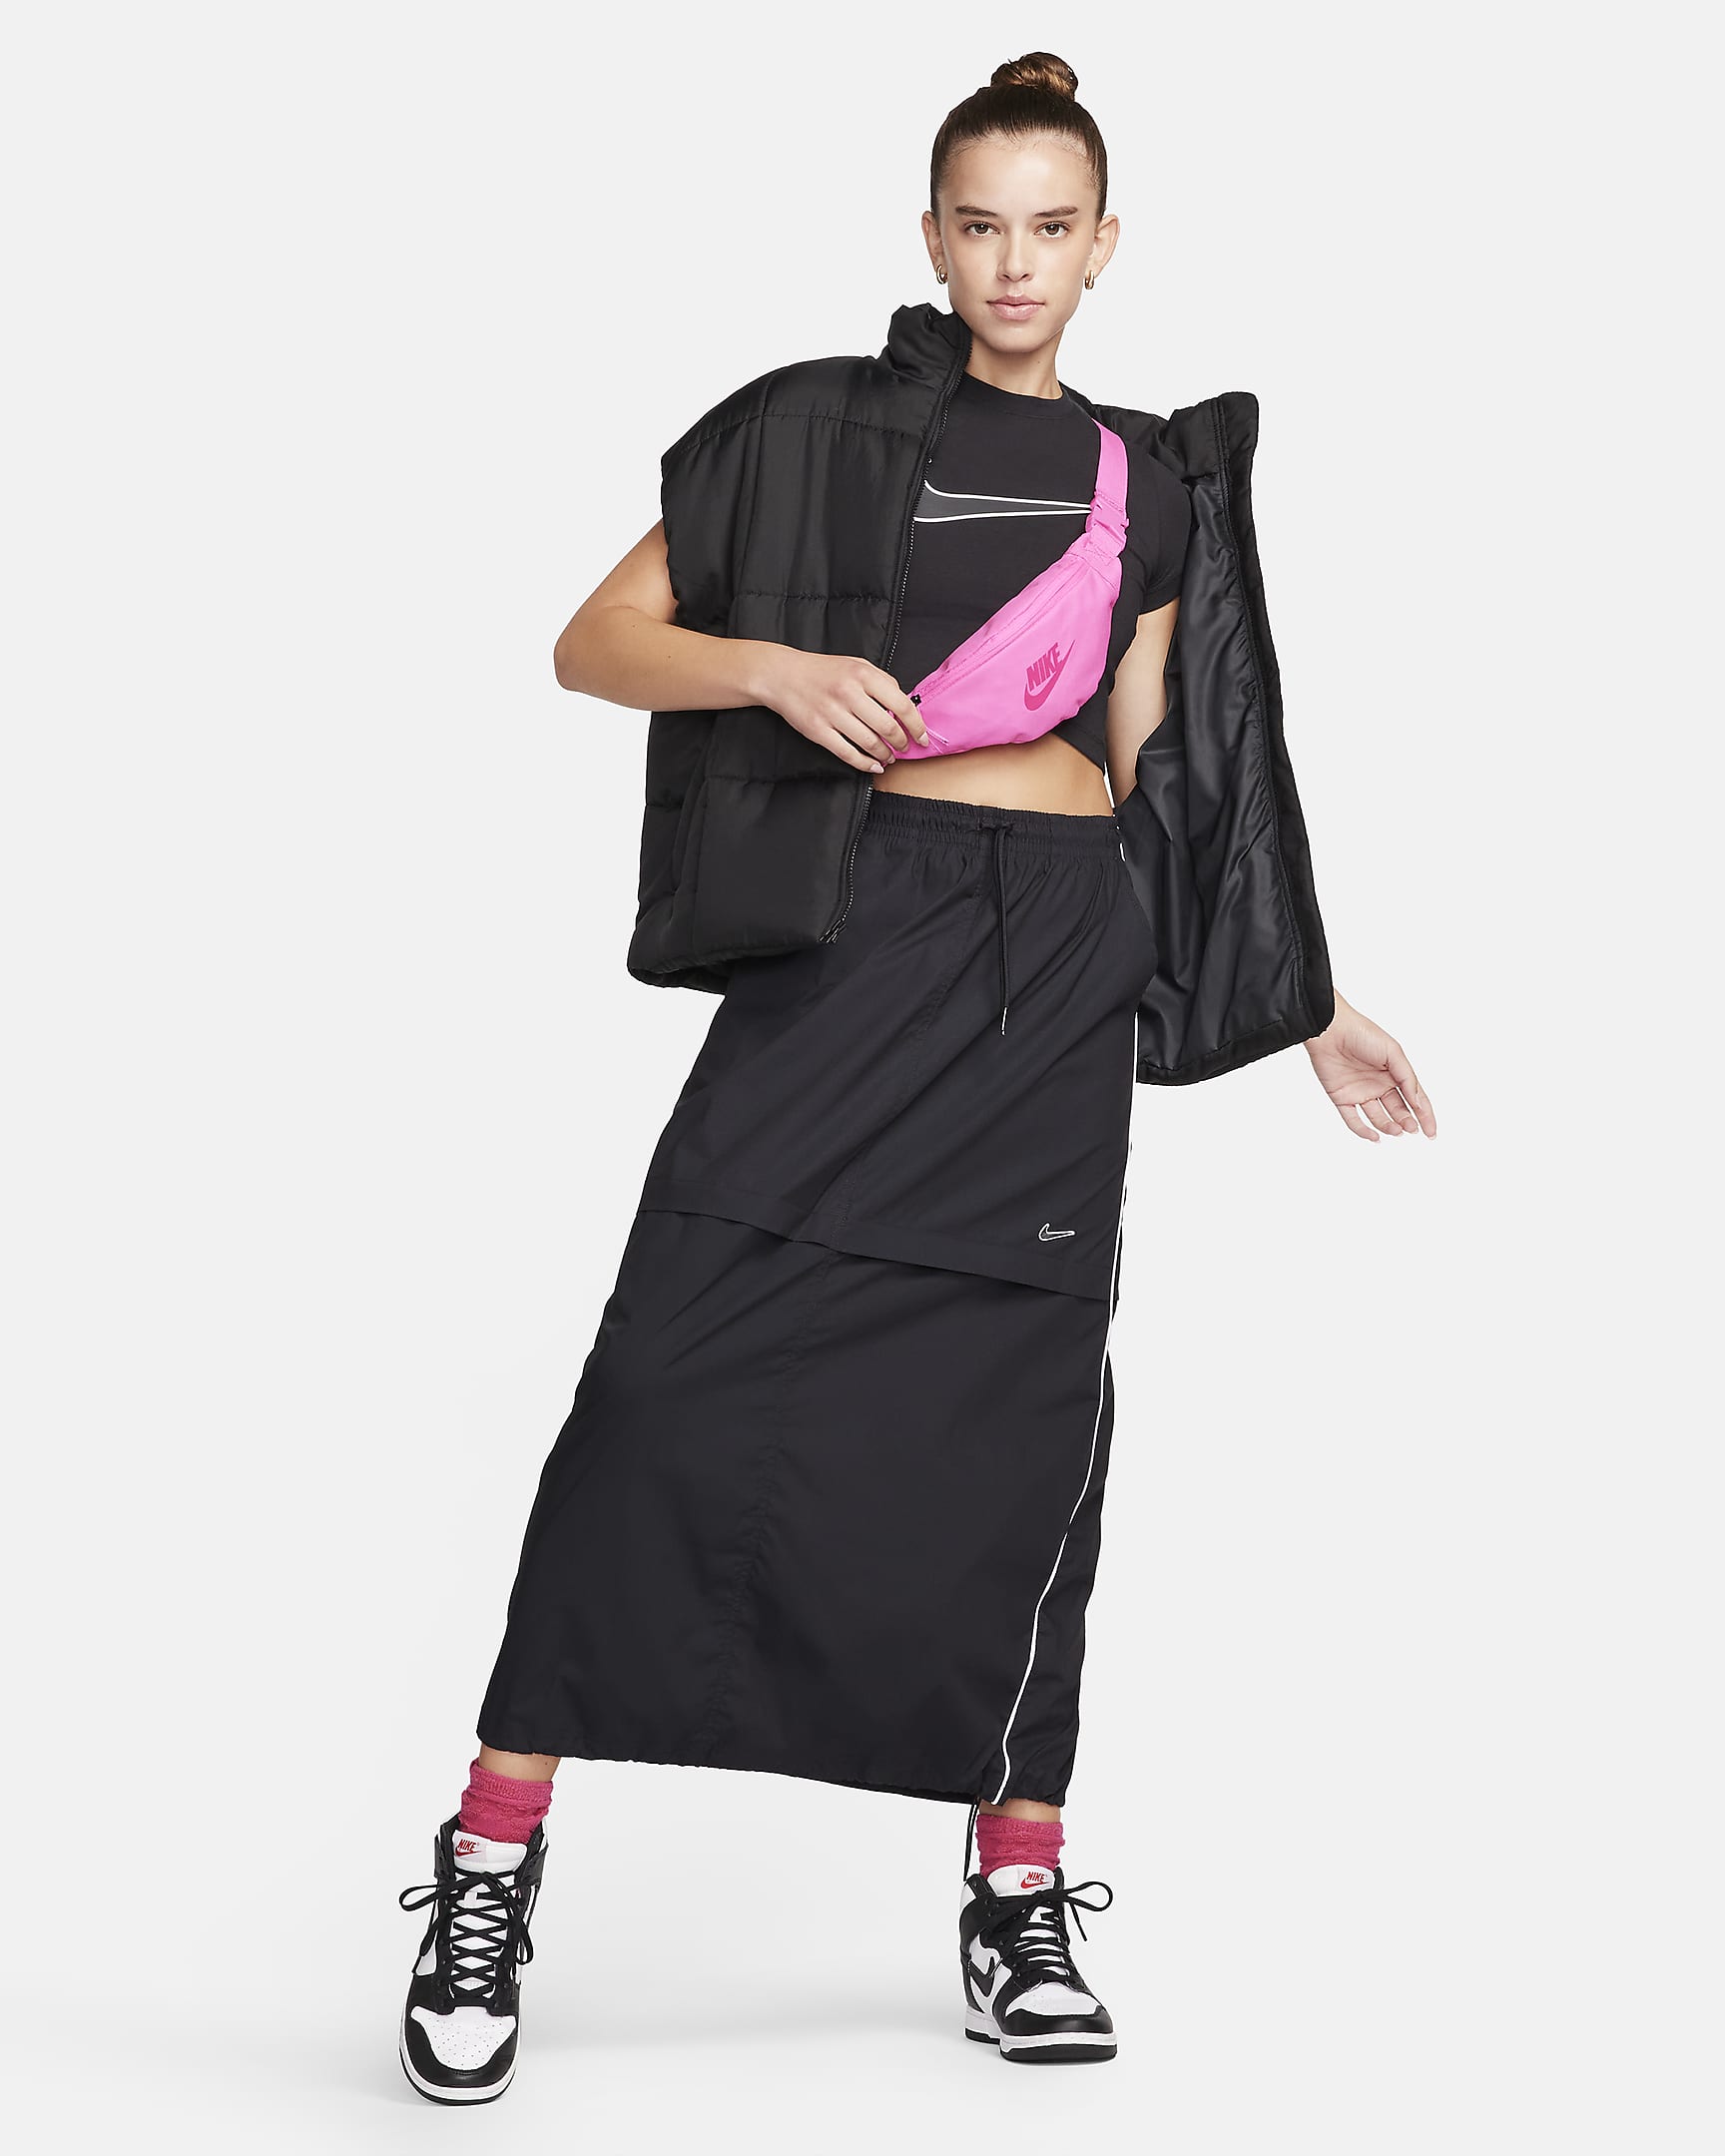 Nike Sportswear Women's Woven Skirt. Nike AU